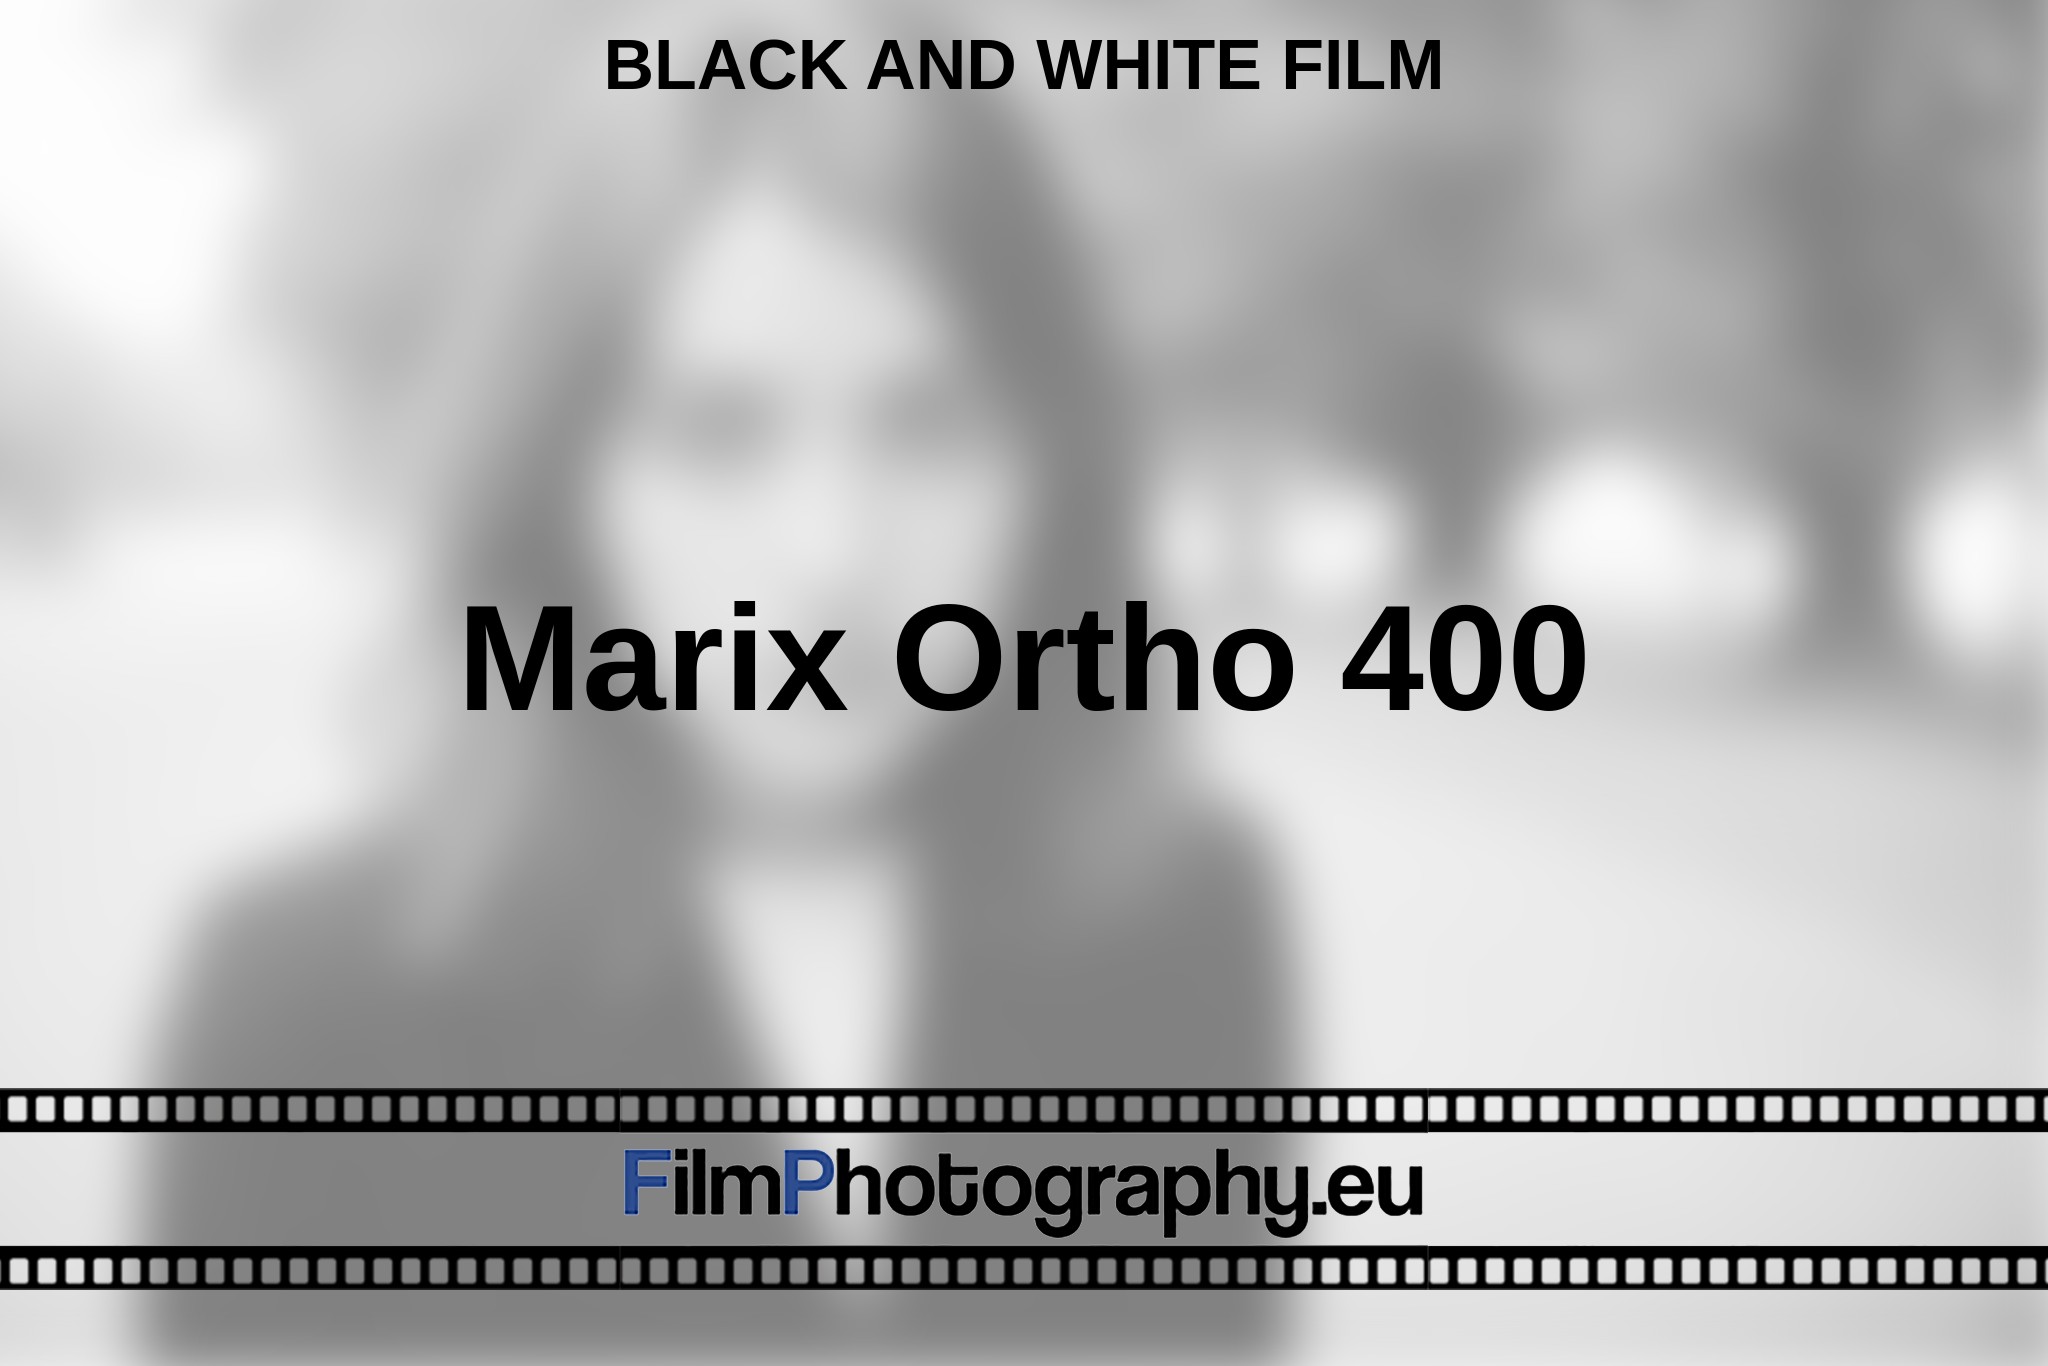 marix-ortho-400-black-and-white-film-en-bnv.jpg